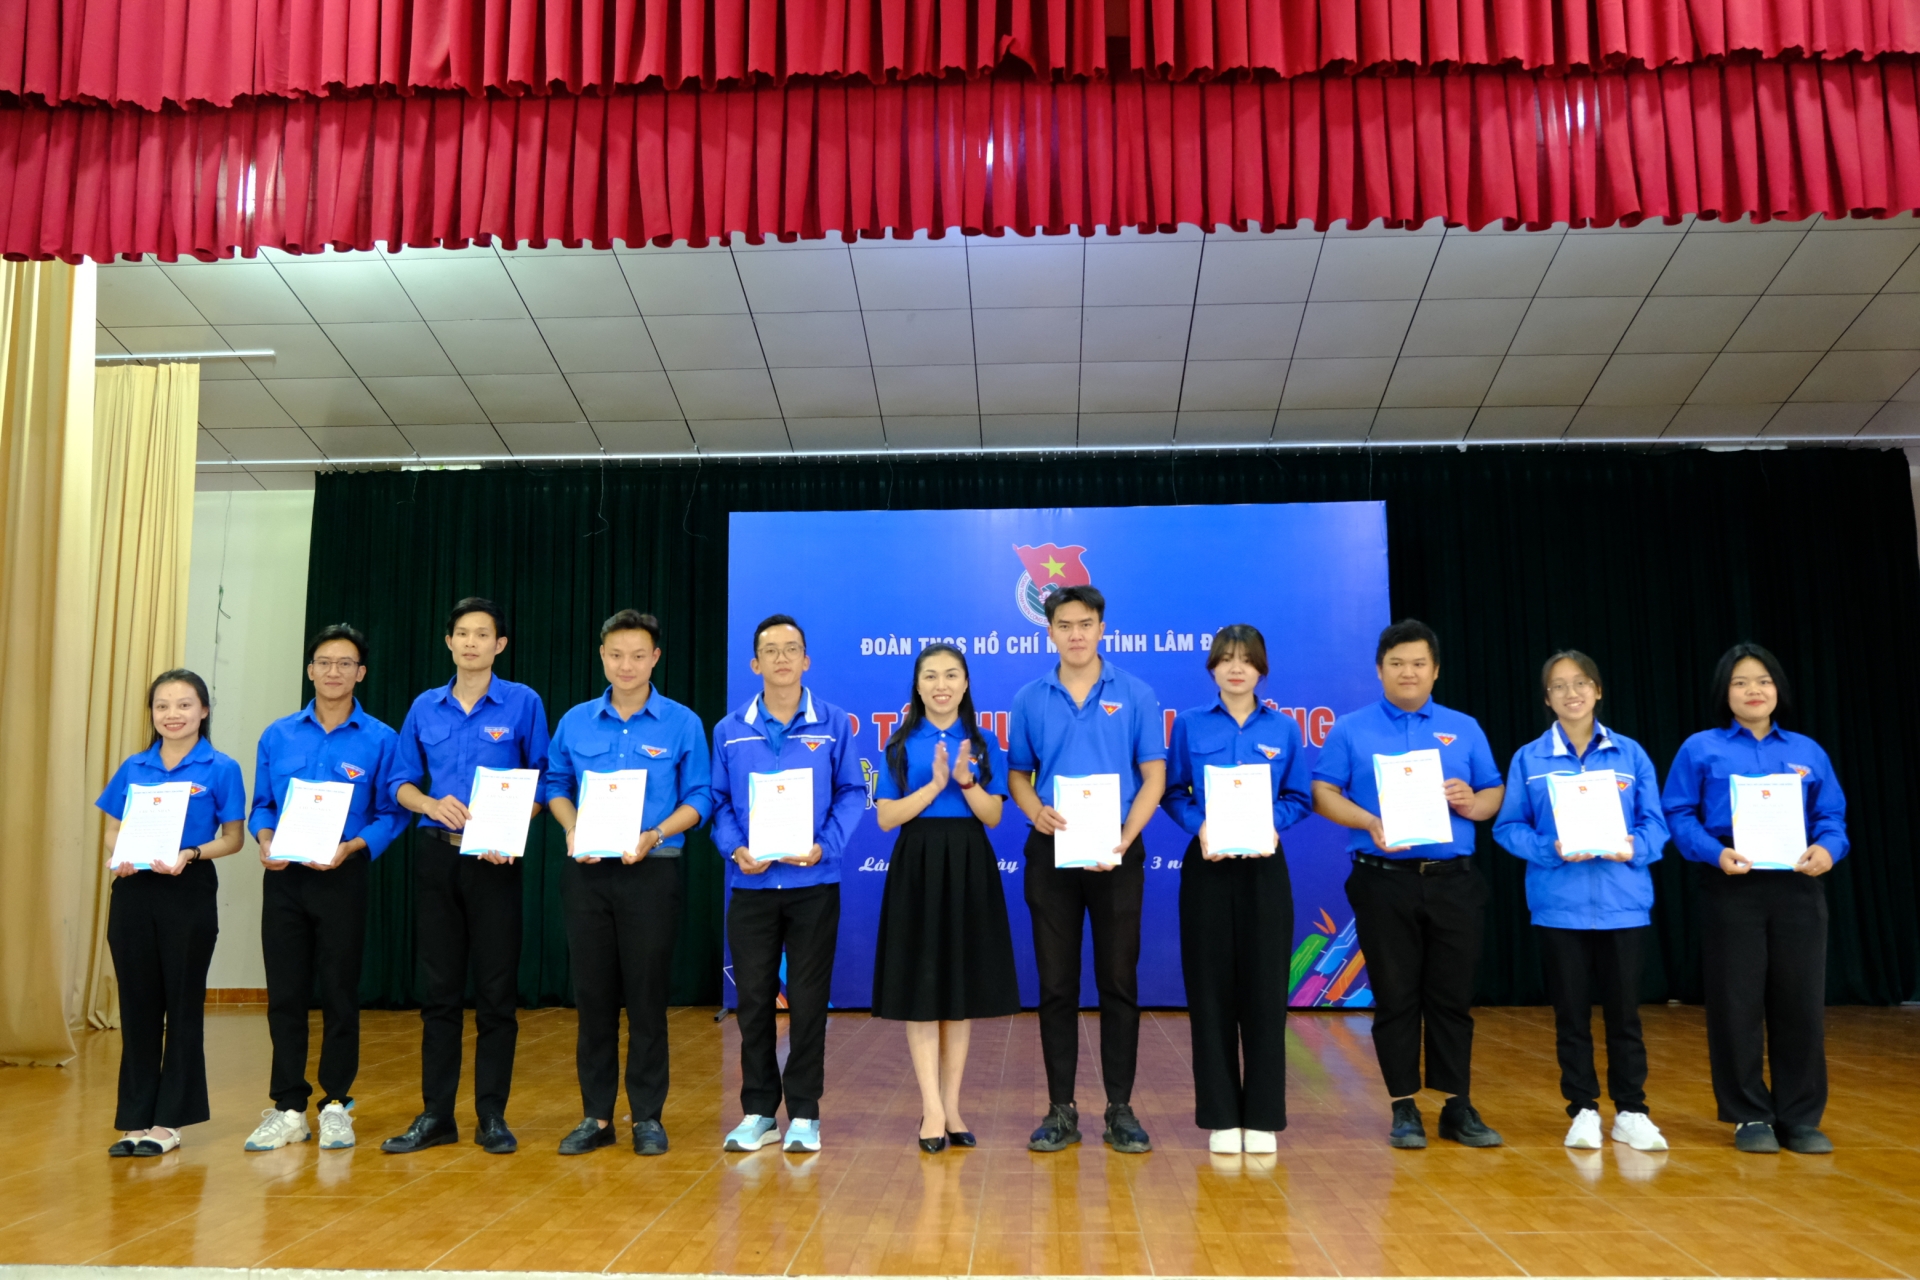 Chị Trần Diệp Mỹ Dung - Phó Bí thư Tỉnh Đoàn trao giấy chứng nhận hoàn thành Lớp tập huấn, bồi dưỡng điều phối viên cho các học viên